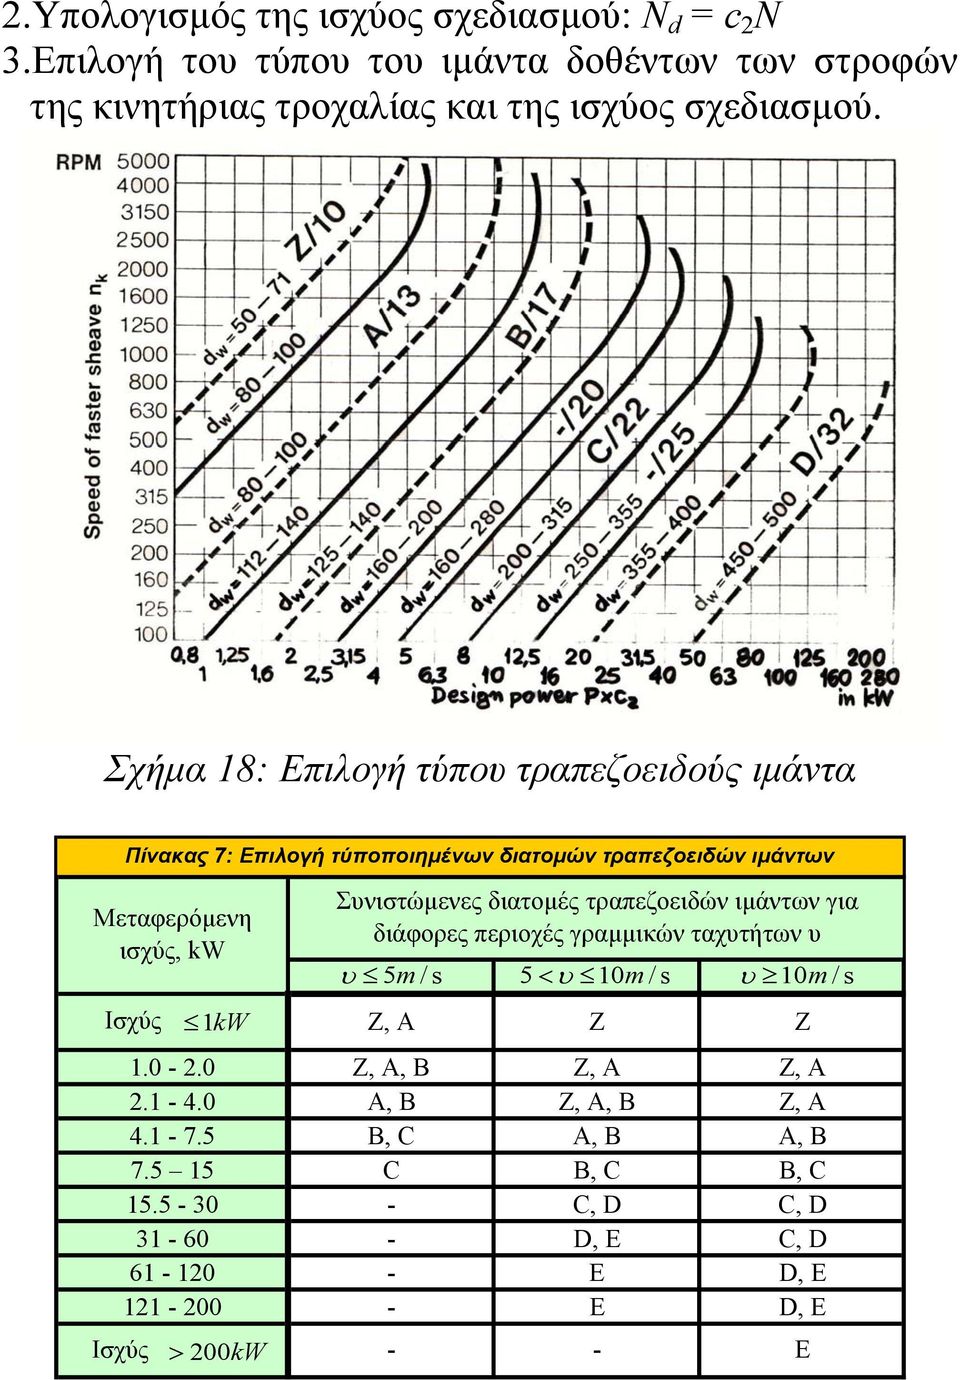 διατομές τραπεζοειδών ιμάντων για διάφορες περιοχές γραμμικών ταχυτήτων υ υ 5 m /s 5< υ 10 m /s υ 10 m / s Ισχύς 1kW Z, A Z 1.0-2.0 Z, A, B Z, A Z, A 2.